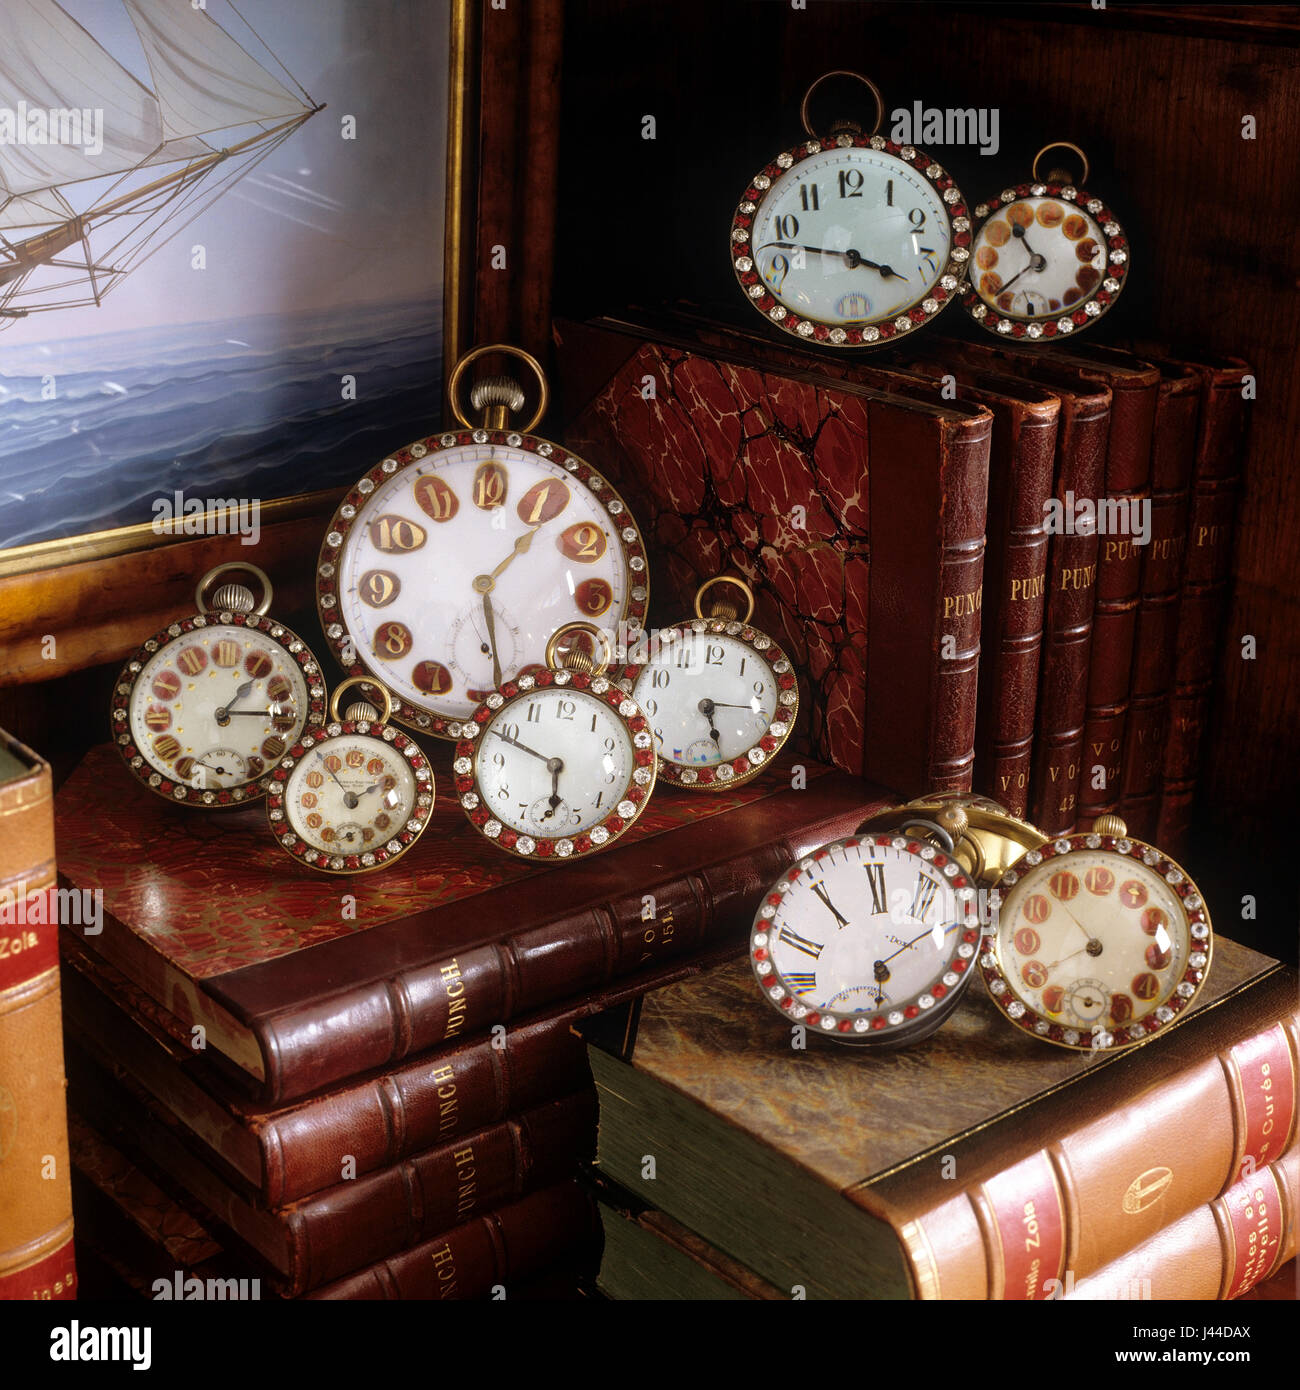 Ende des 19. Jahrhunderts Glas Kugel Uhren Leder gebundene Bücher bekleben umgibt, die mit farbigen Steinen Stockfoto